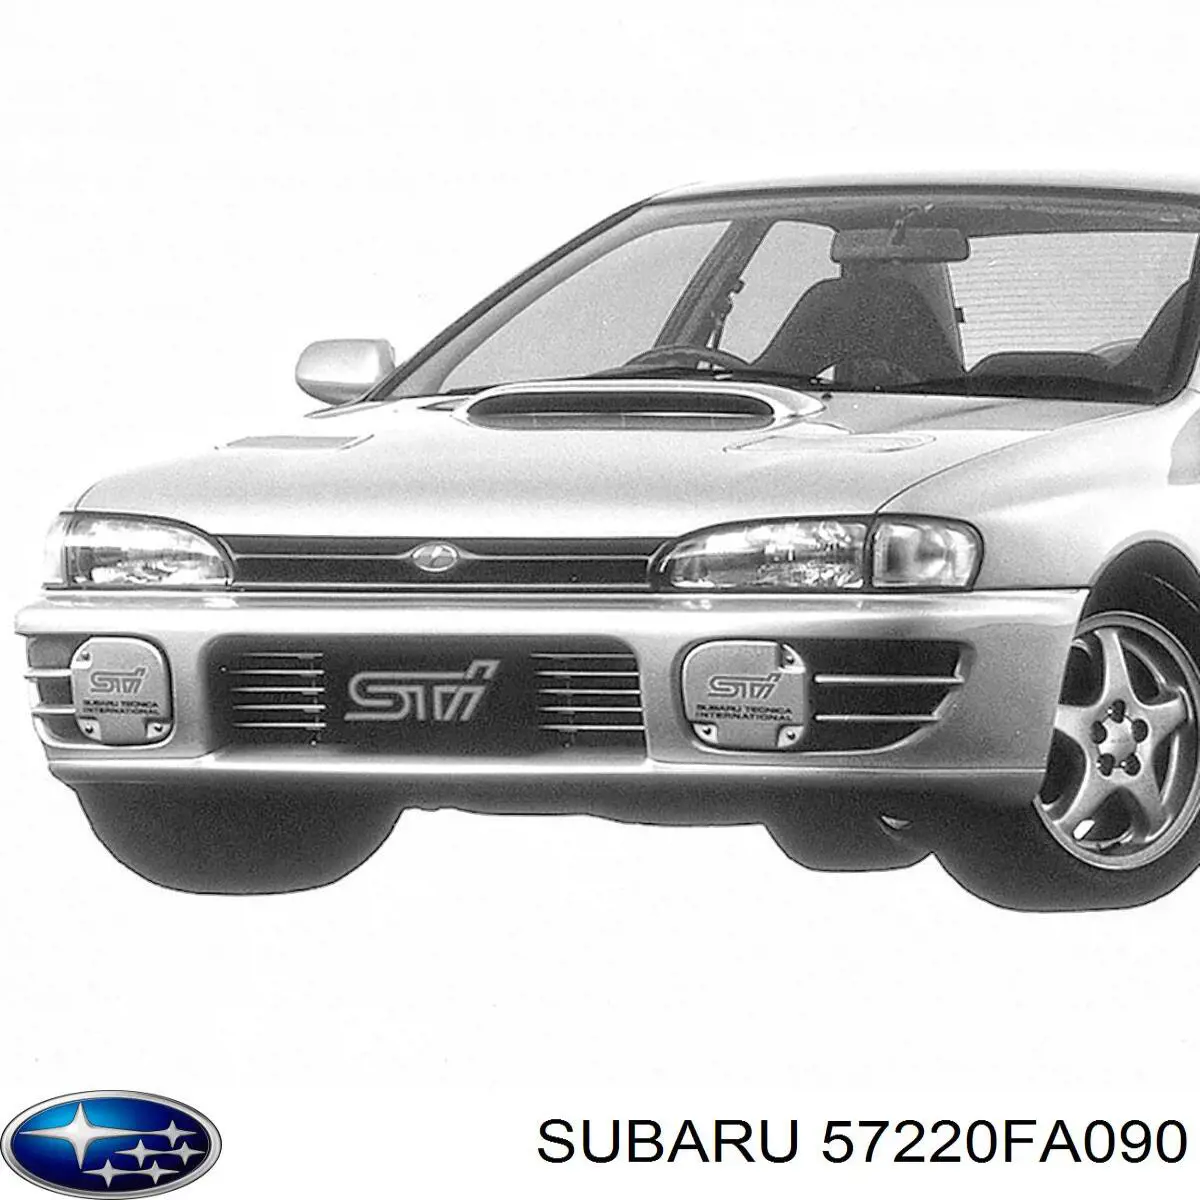 Капот на Subaru Impreza I 